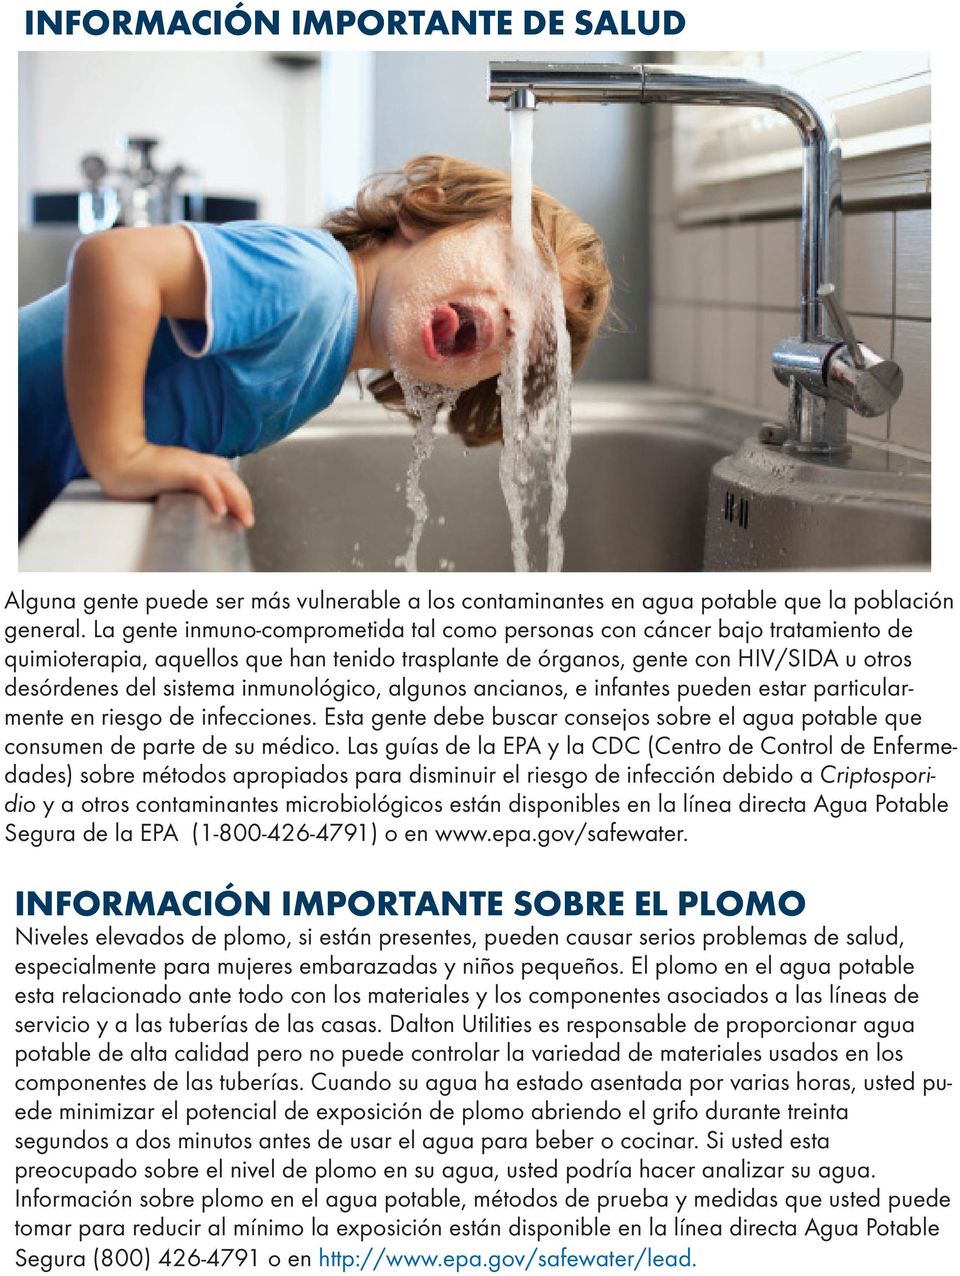 inmunológico, algunos ancianos, e infantes pueden estar particularmente en riesgo de infecciones. Esta gente debe buscar consejos sobre el agua potable que consumen de parte de su médico.